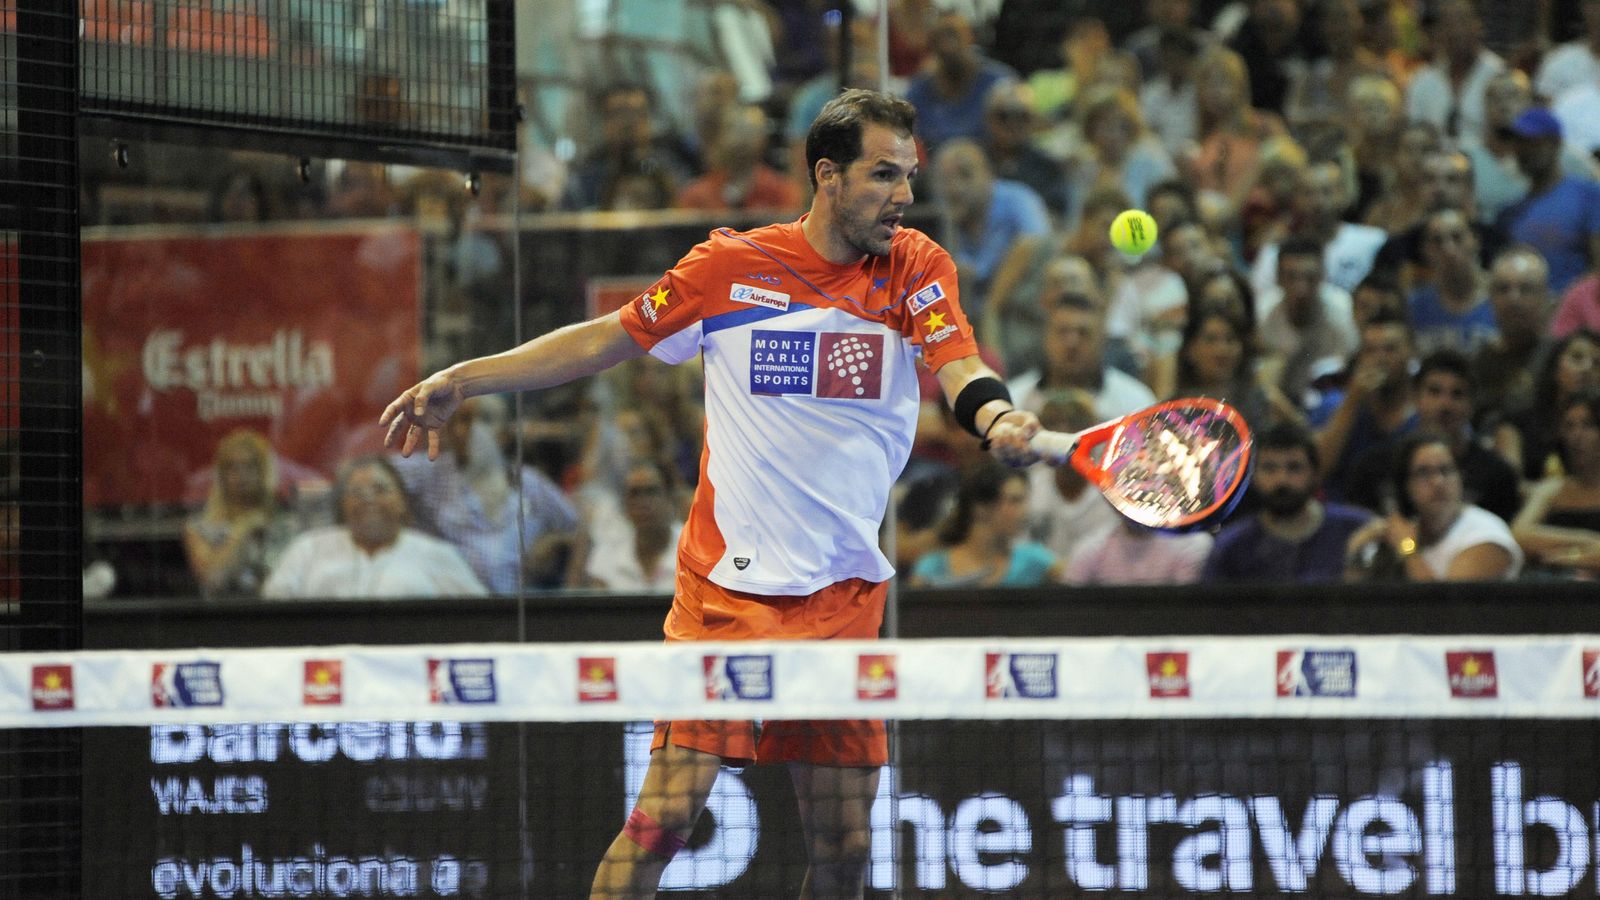 Foto: Juan Martín Díaz busca su primer título de la temporada (Foto: WPT)